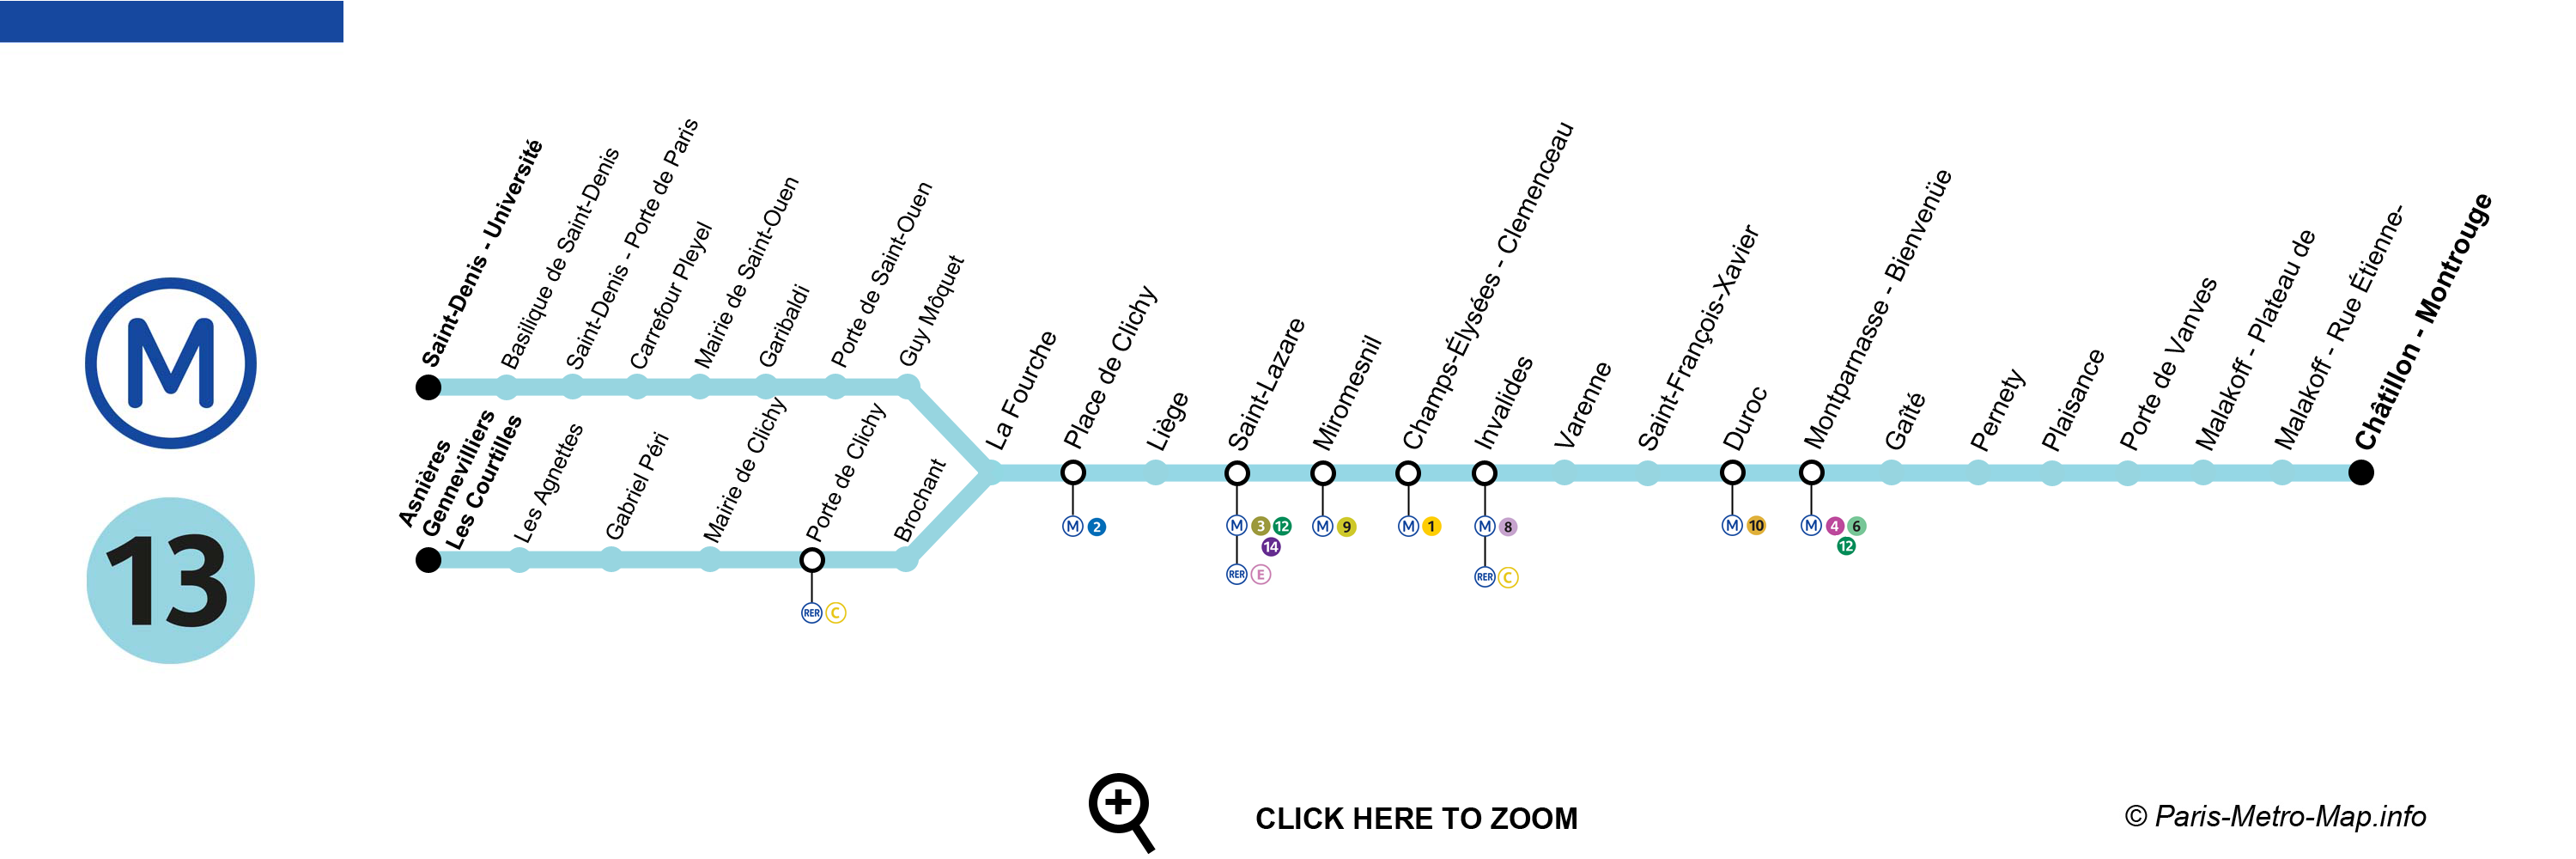 Paris metro line 13 map